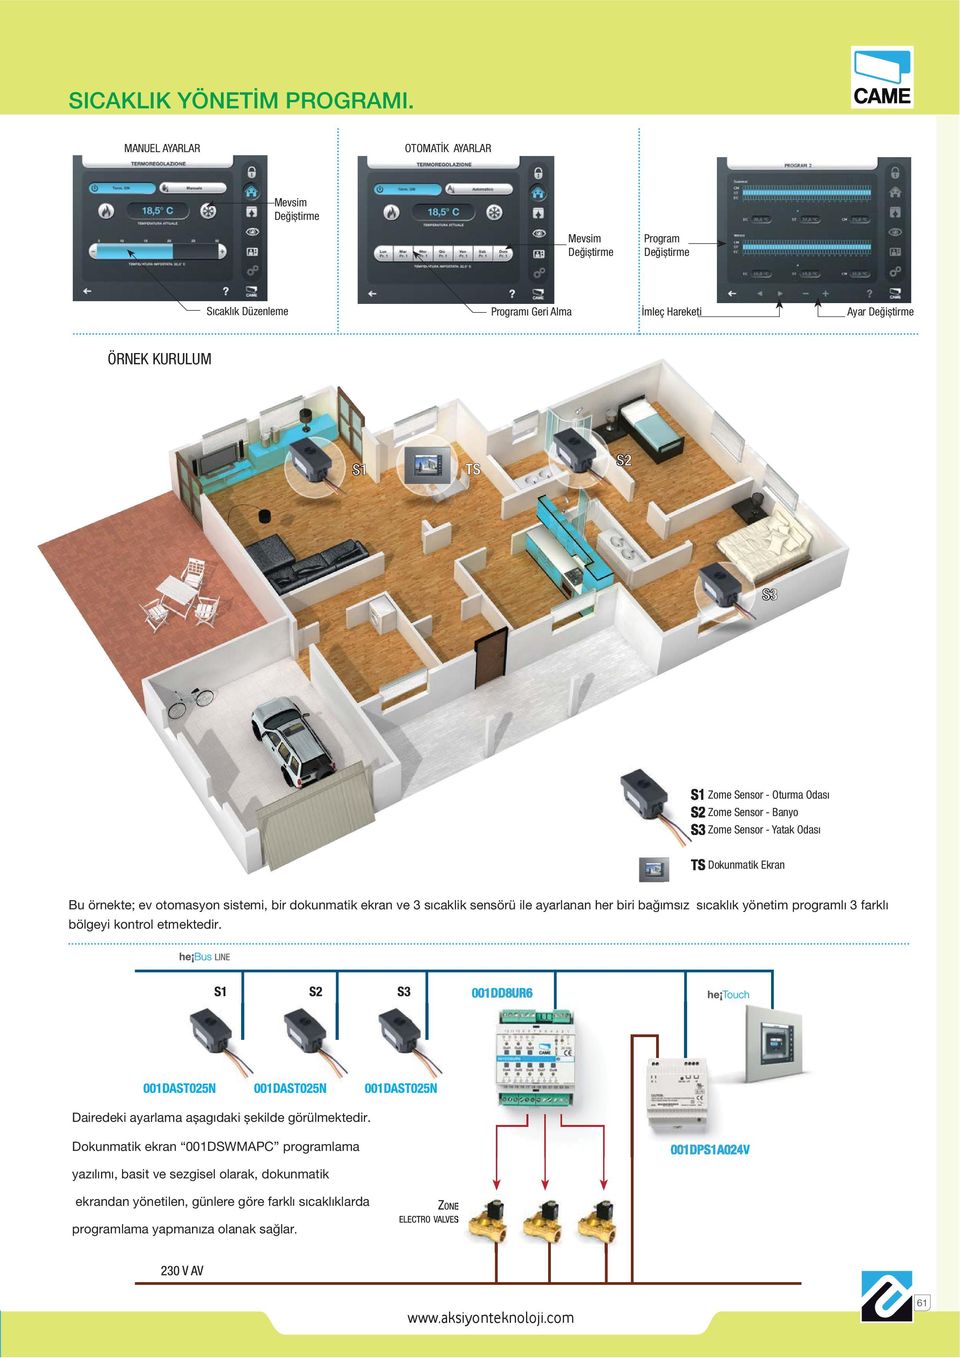 Zome Sensor - Oturma Odası Zome Sensor - Banyo Zome Sensor - Yatak Odası Dokunmatik Ekran Bu örnekte; ev otomasyon sistemi, bir dokunmatik ekran ve 3 sıcaklik sensörü ile